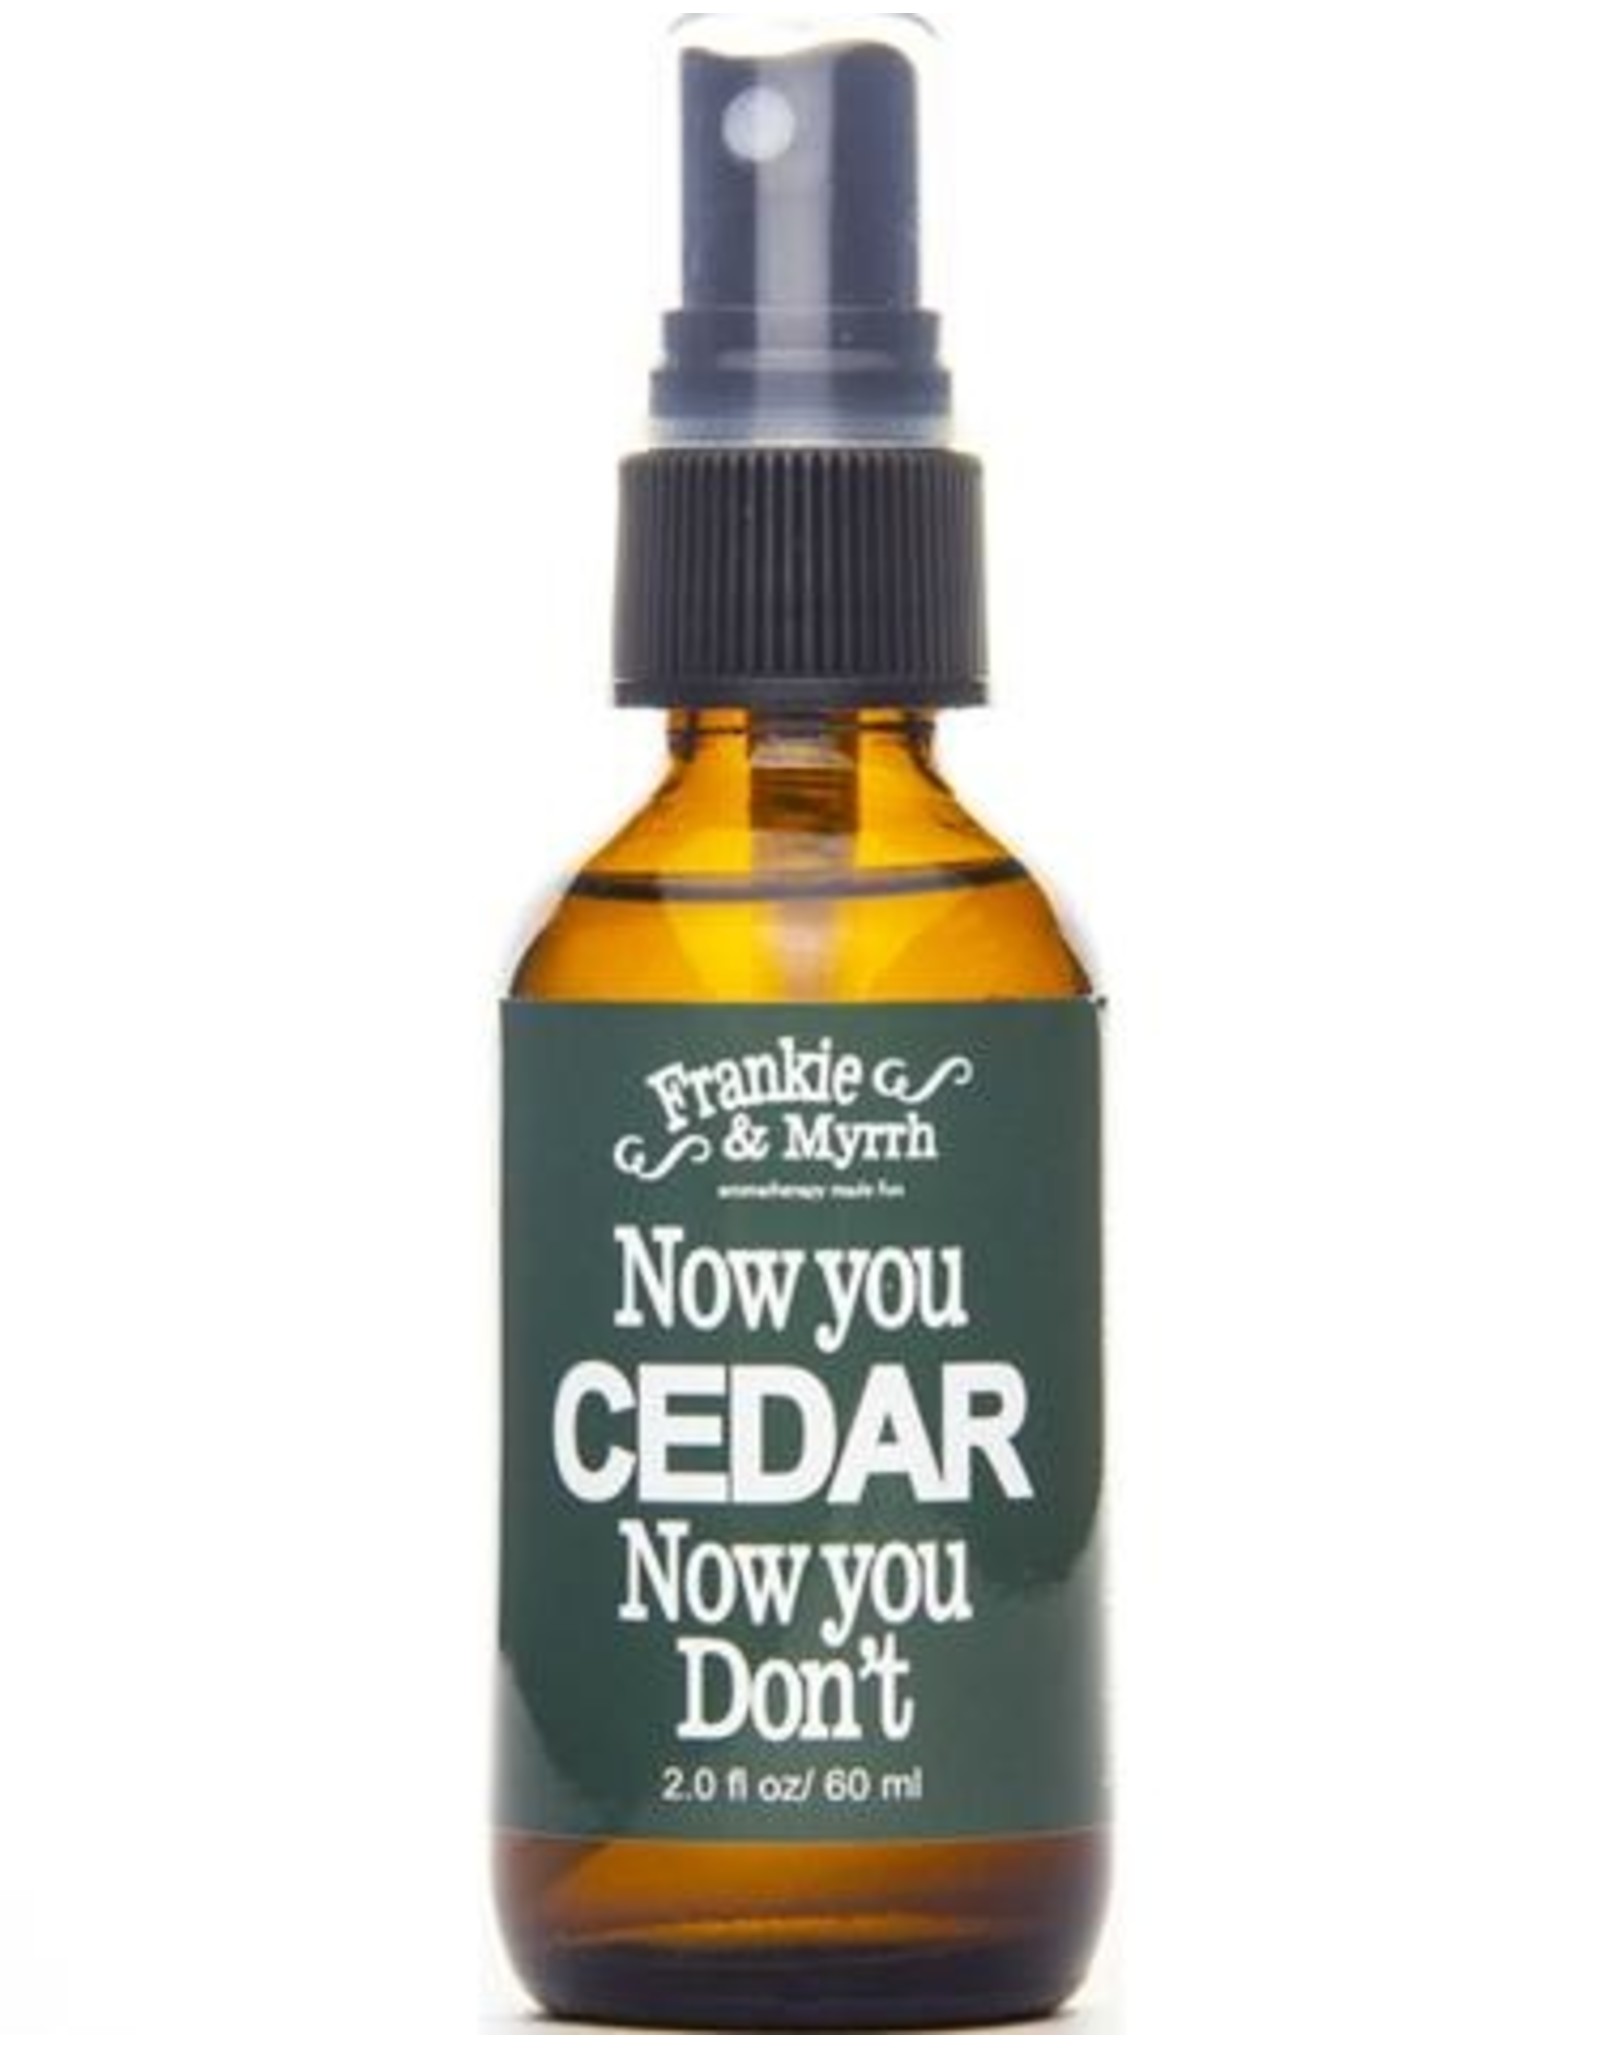 Now You Cedar Now You Don't - Spray